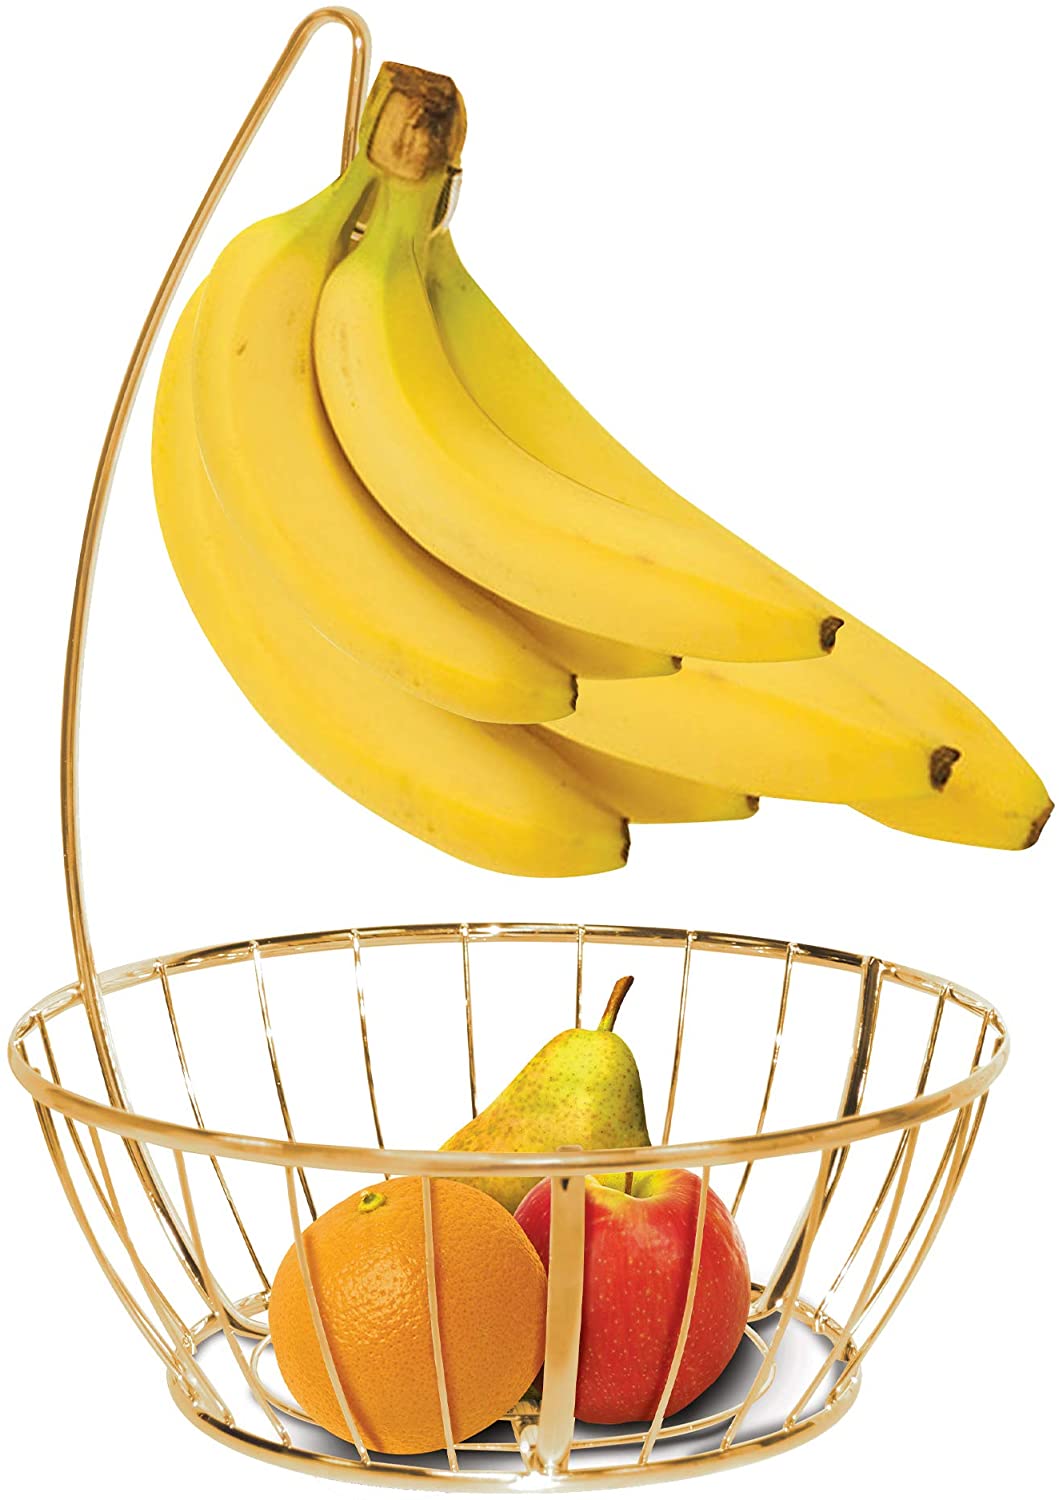 Banana and Fruit Basket Bowl Hanger Holder Stand - Smart Design® 4